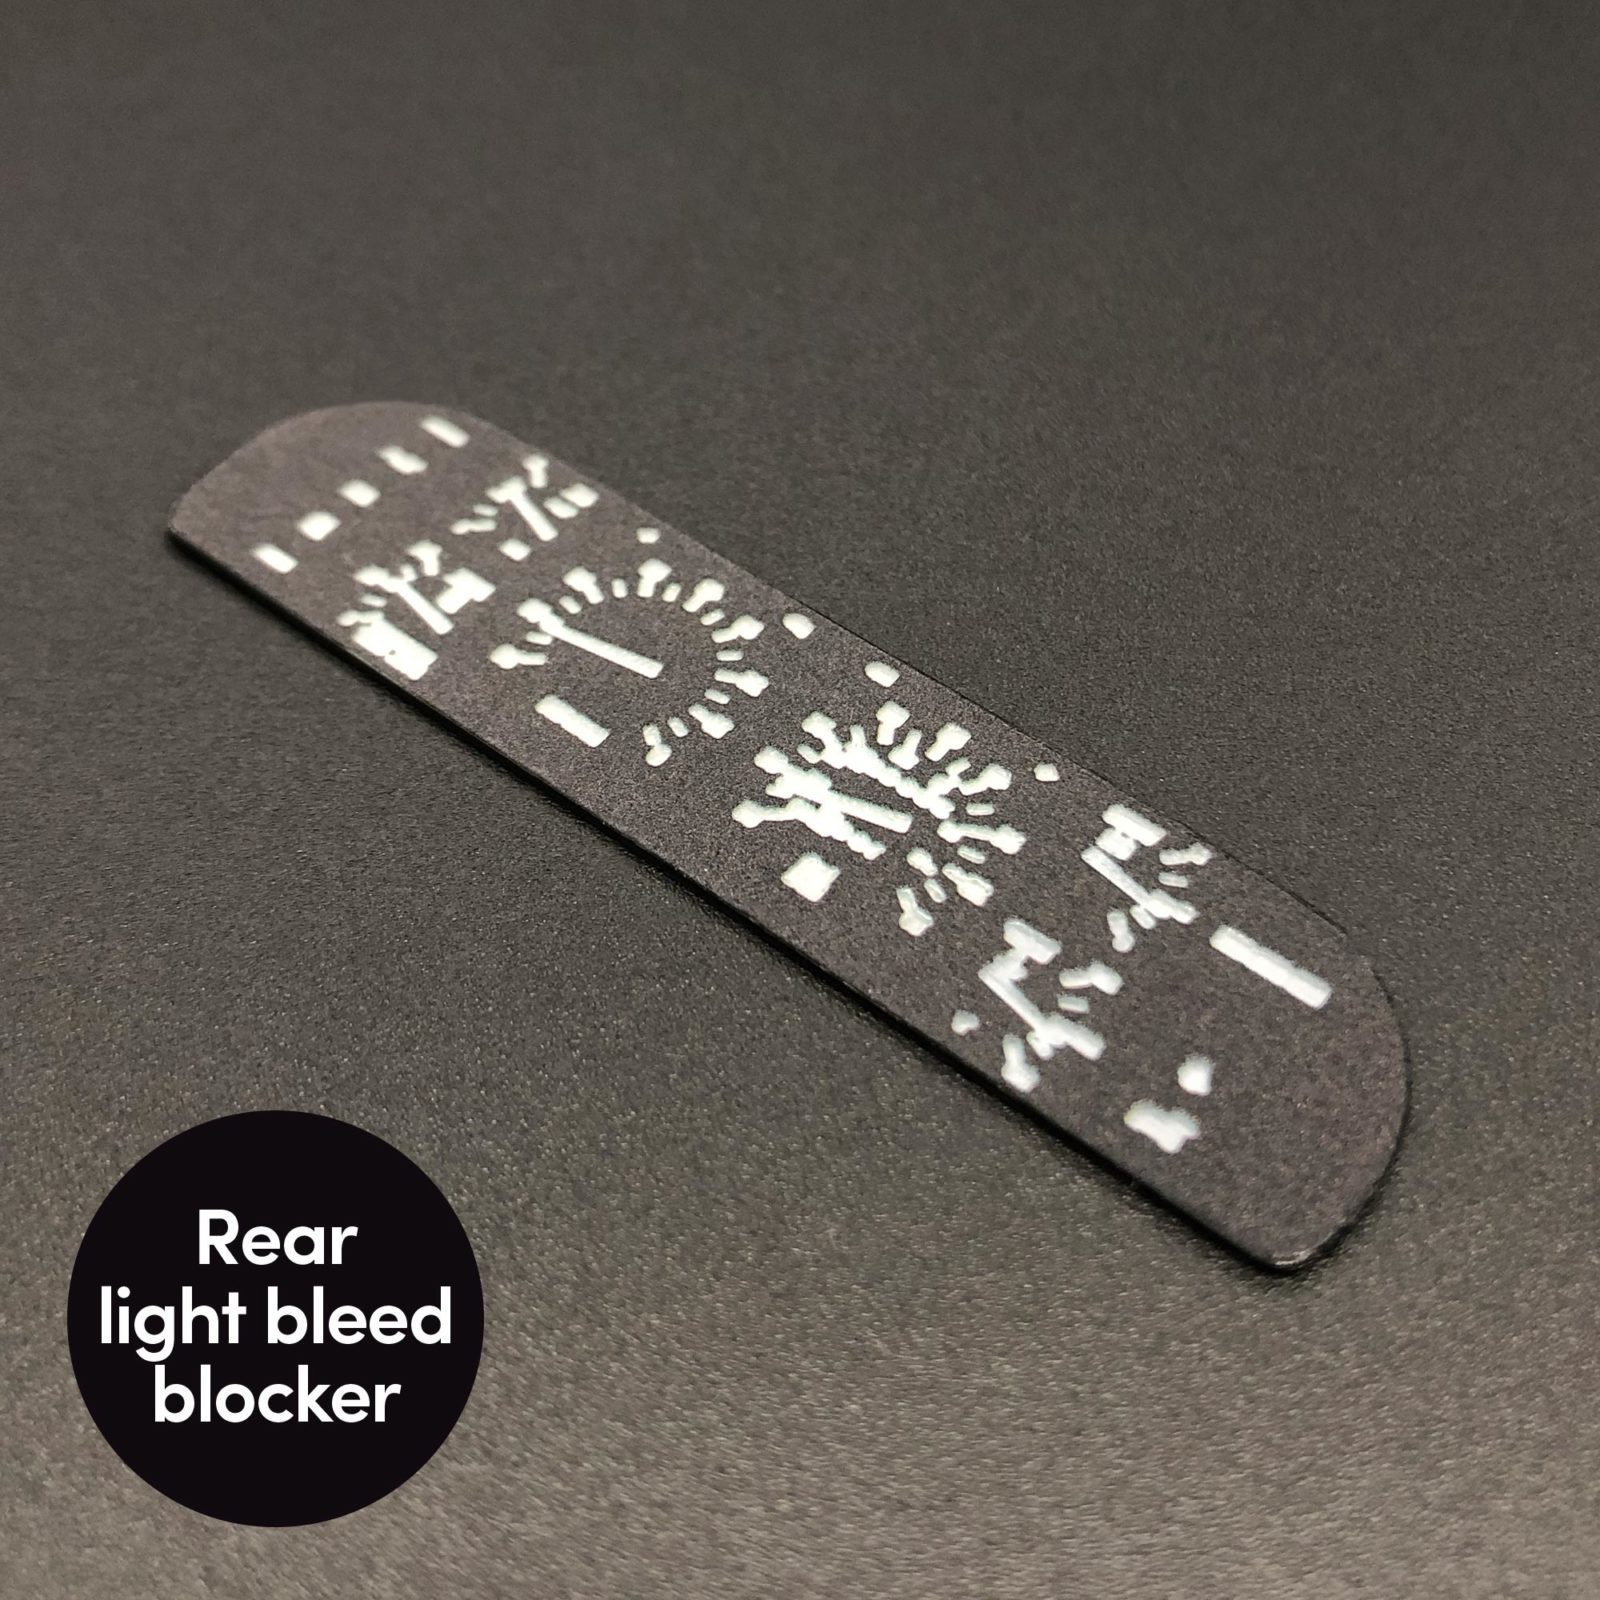 Rear light bleed blocker in DeLorean Dashboard Panel mod